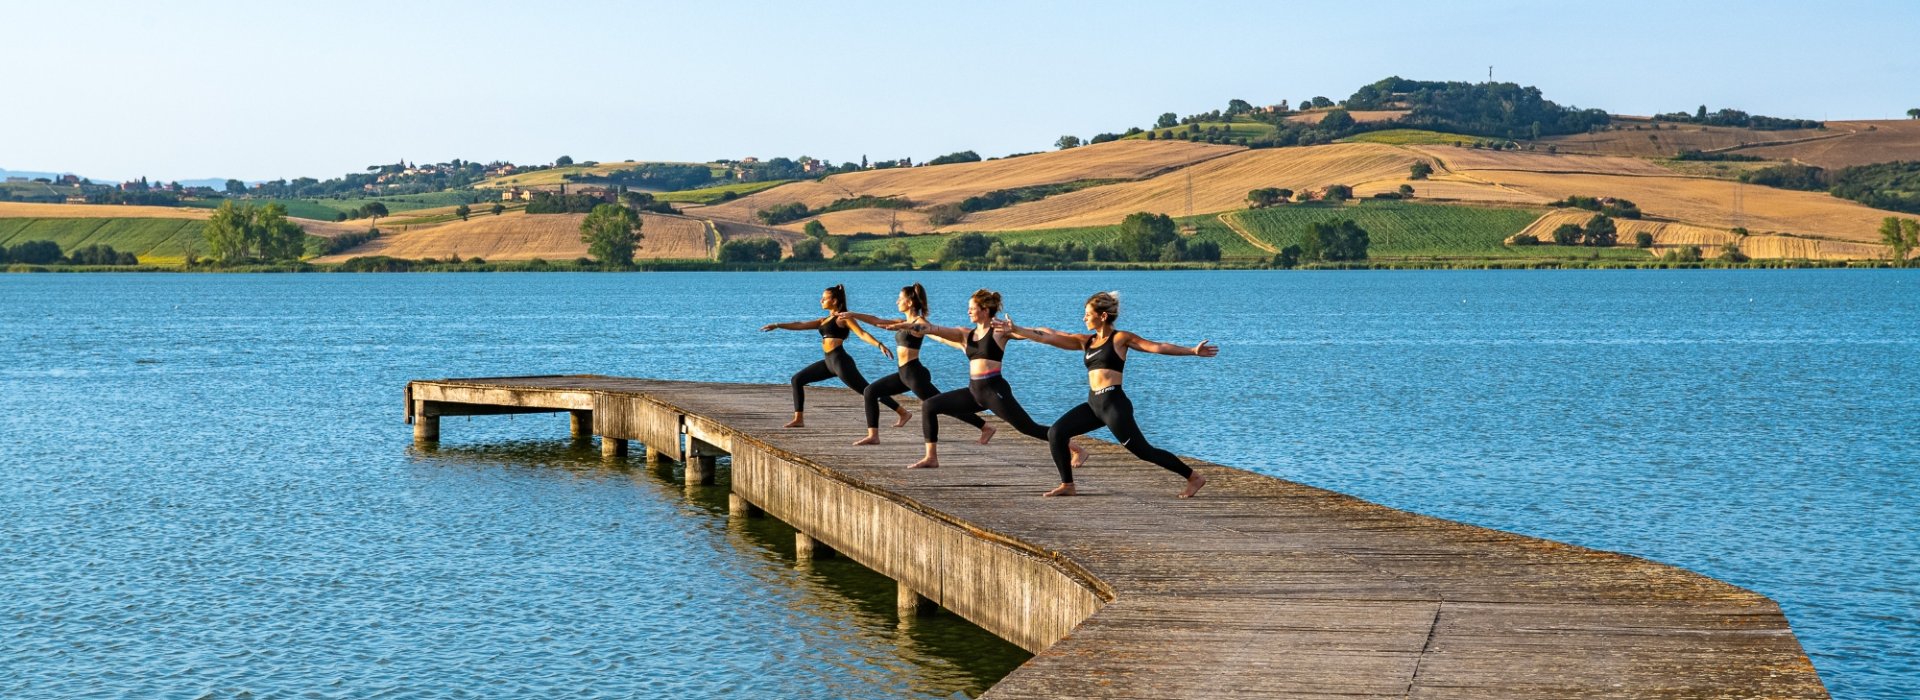 Lezione di yoga e picnic sulla riva del lago degli Etruschi